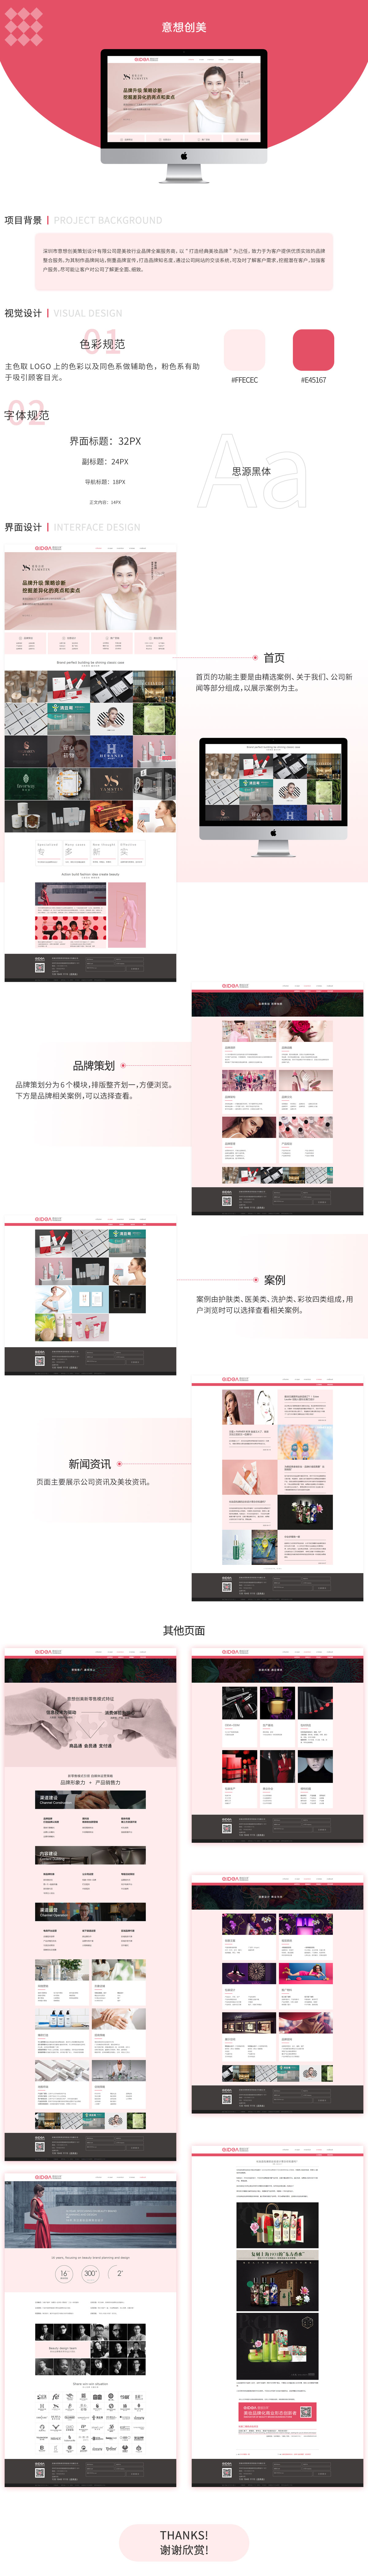 深圳意想创美策划设计有限企业响应式网站案例